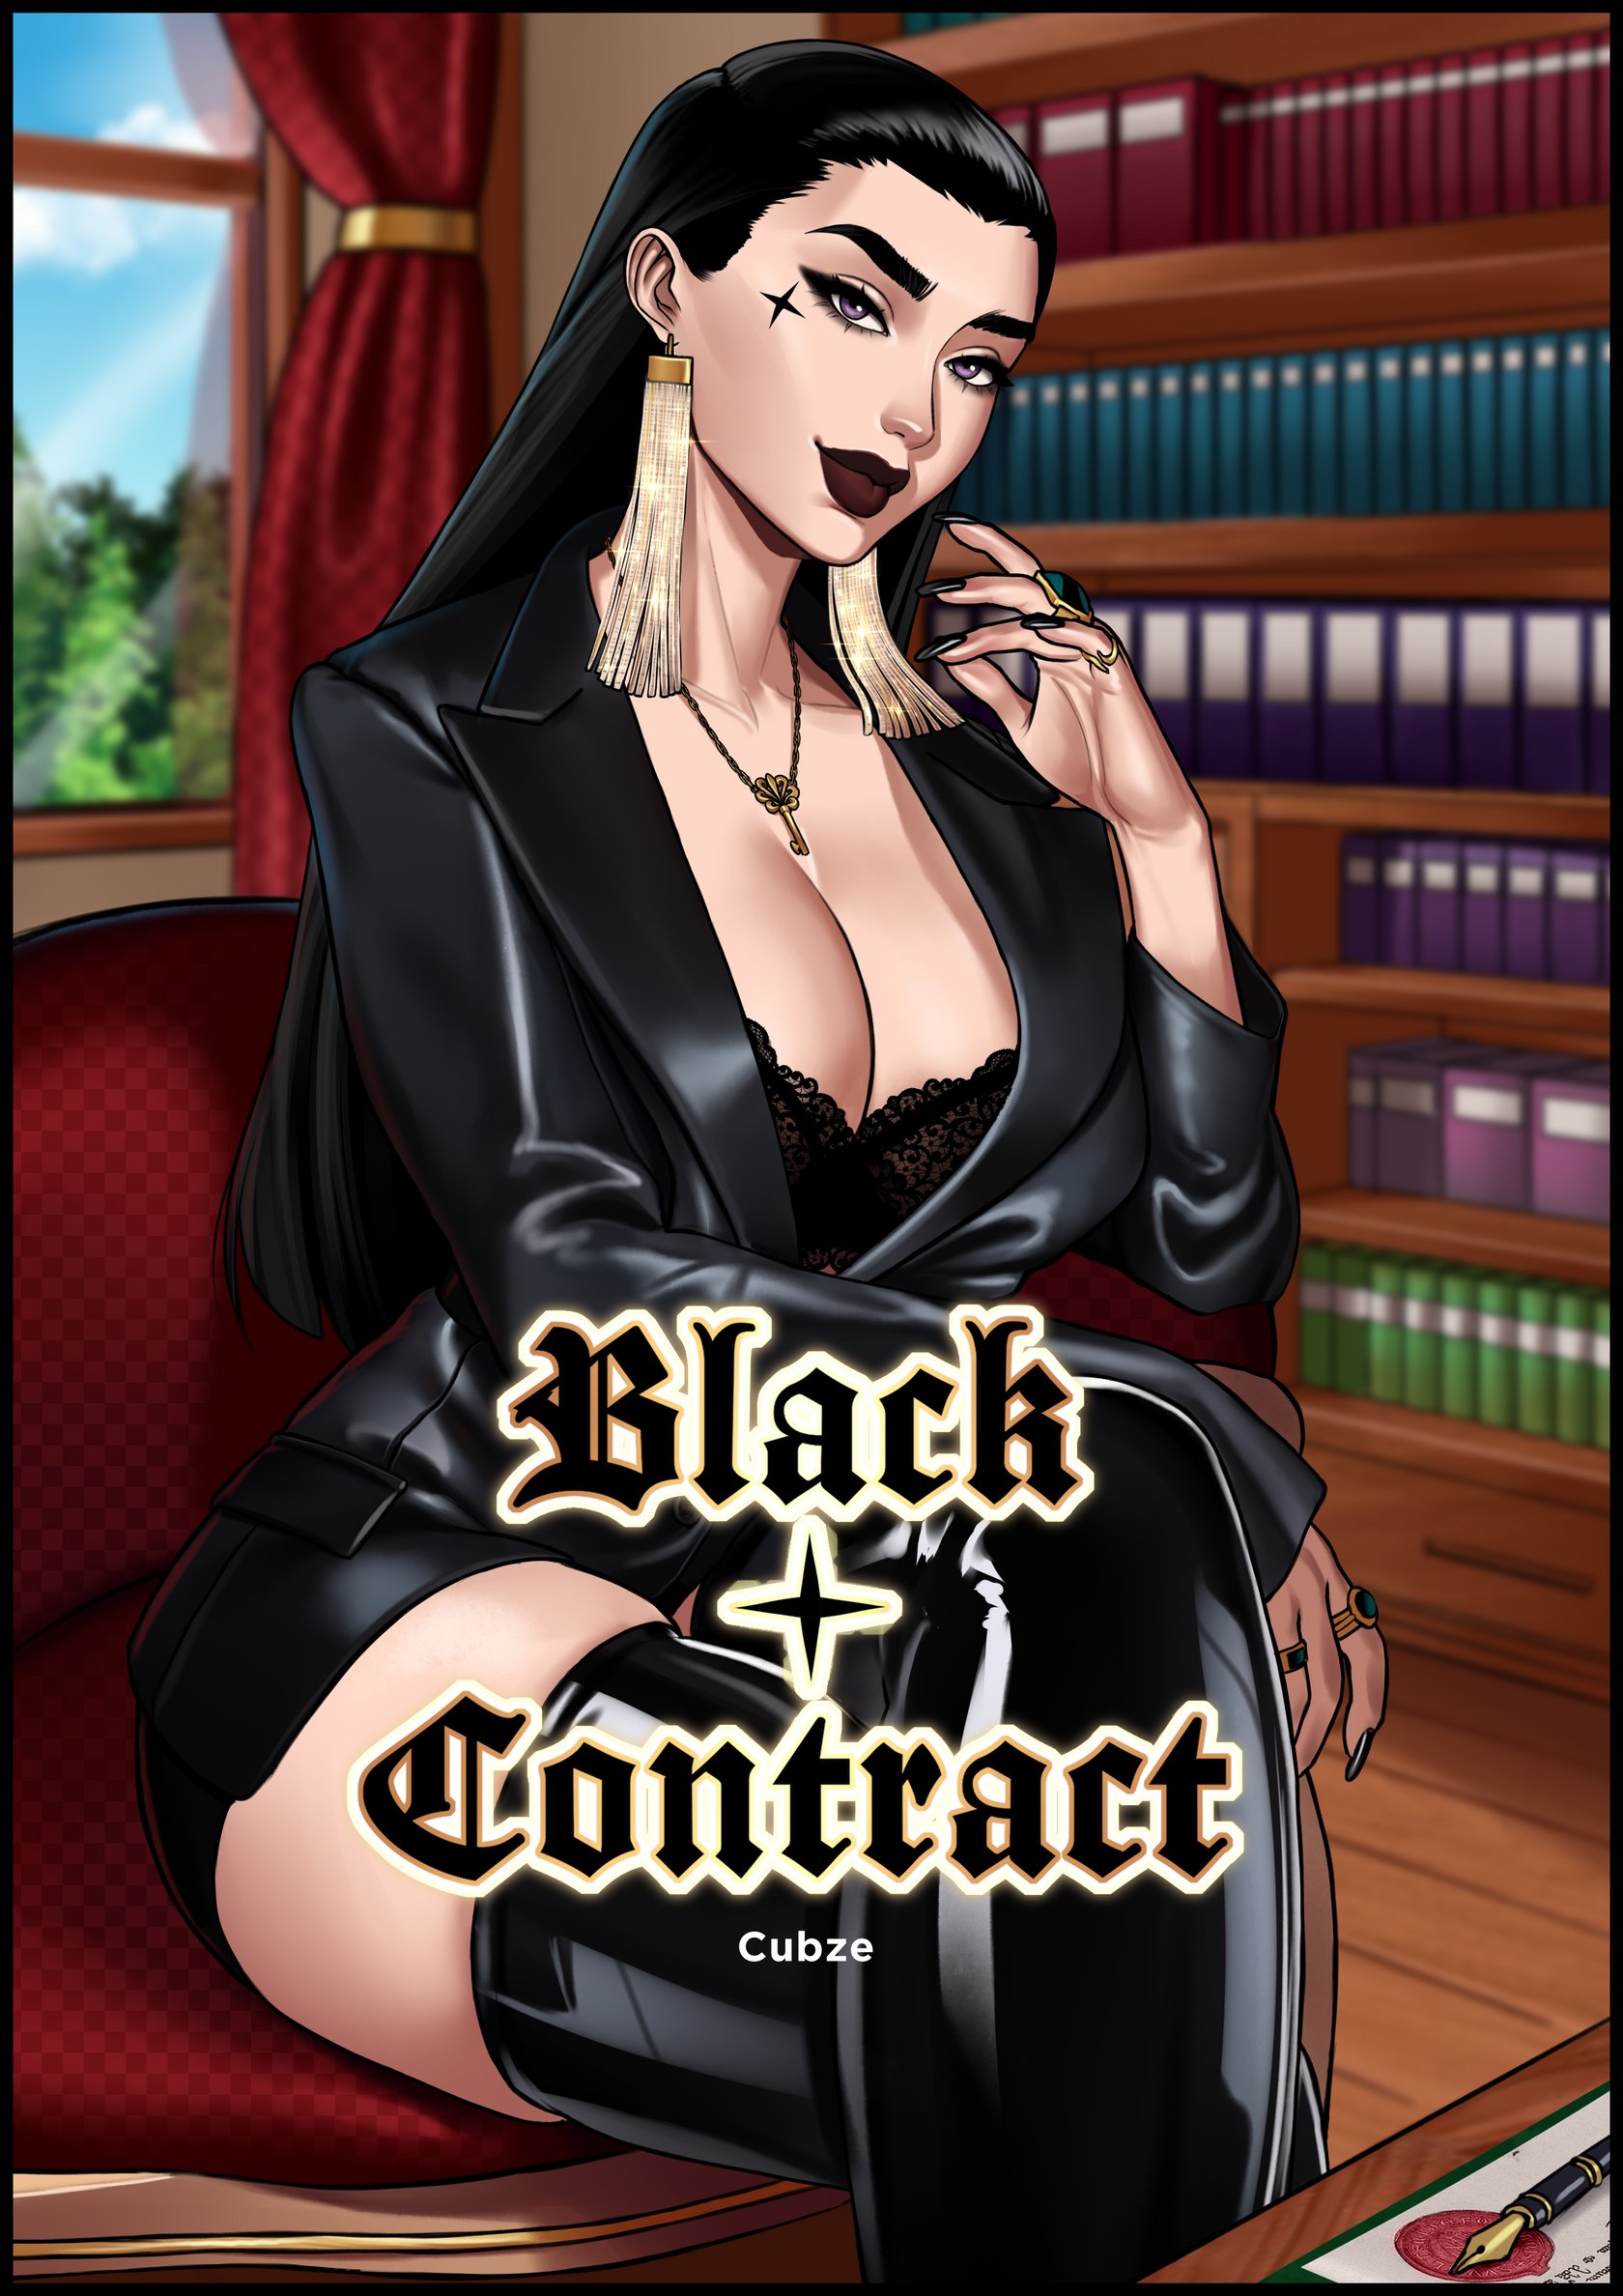 Black Contract Ch. 1 comic porn | HD Porn Comics